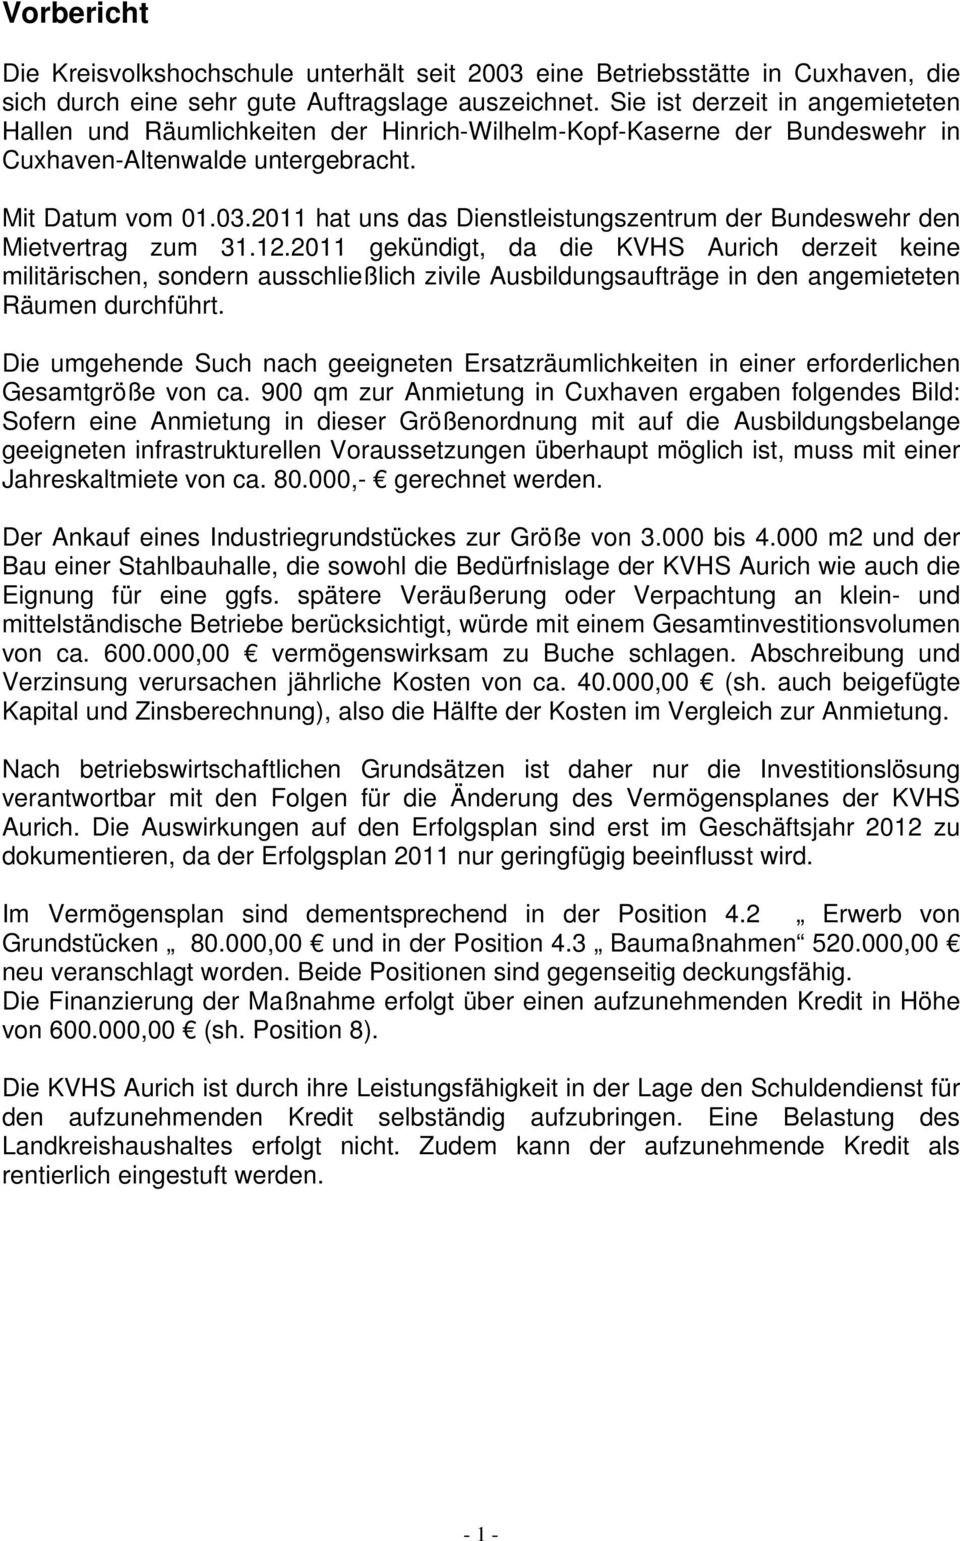 2011 hat uns das Dienstleistungszentrum der Bundeswehr den Mietvertrag zum 31.12.